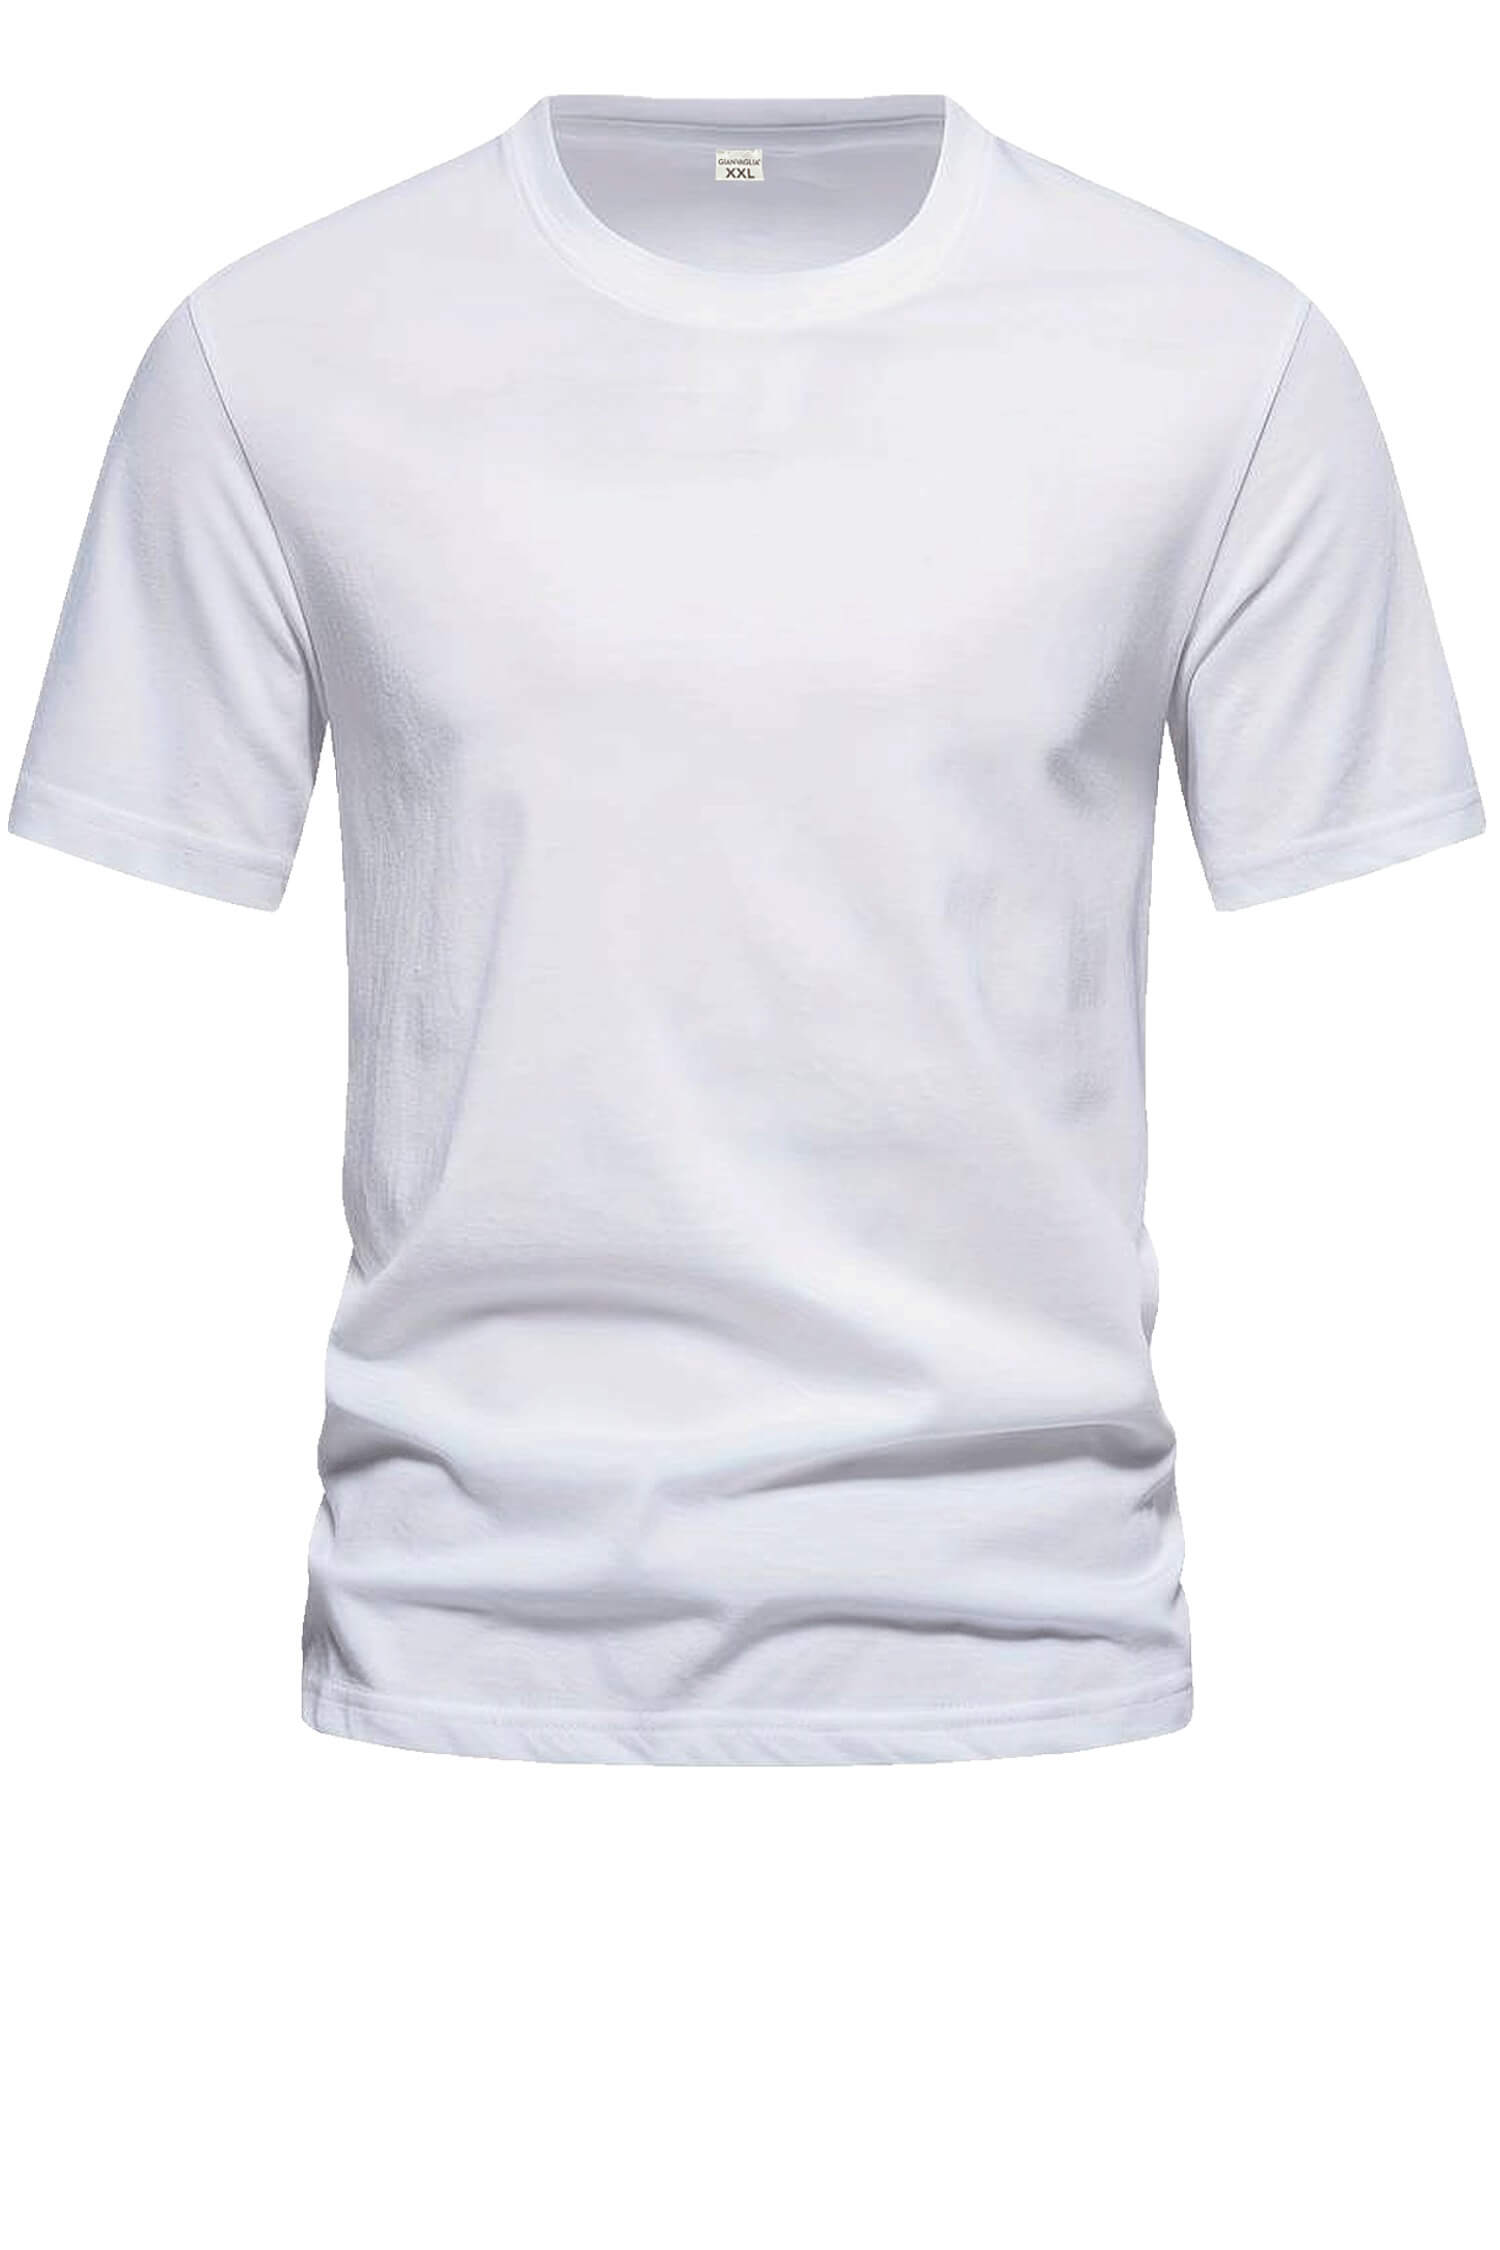 Bořek pánské klasické tričko TS-1006 M bílá